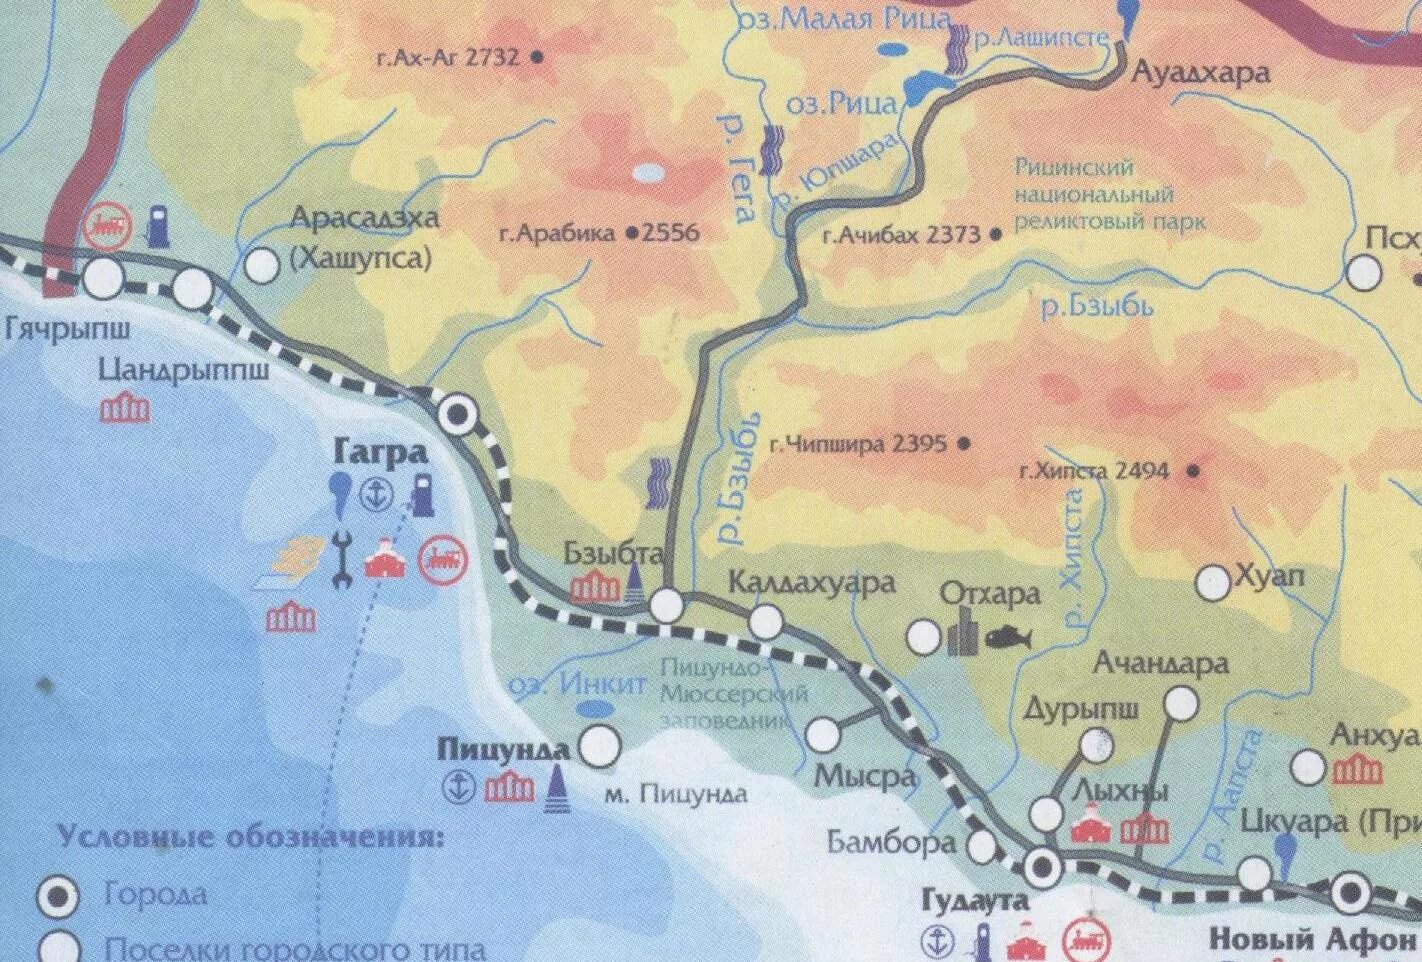 Озеро рица абхазия на карте где находится. Река Бзыбь Абхазия на карте Гагры. Карта Абхазии Рица озеро карта. Оз Рица Абхазия на карте. Карта Абхазии подробная с городами и поселками озеро Рица.